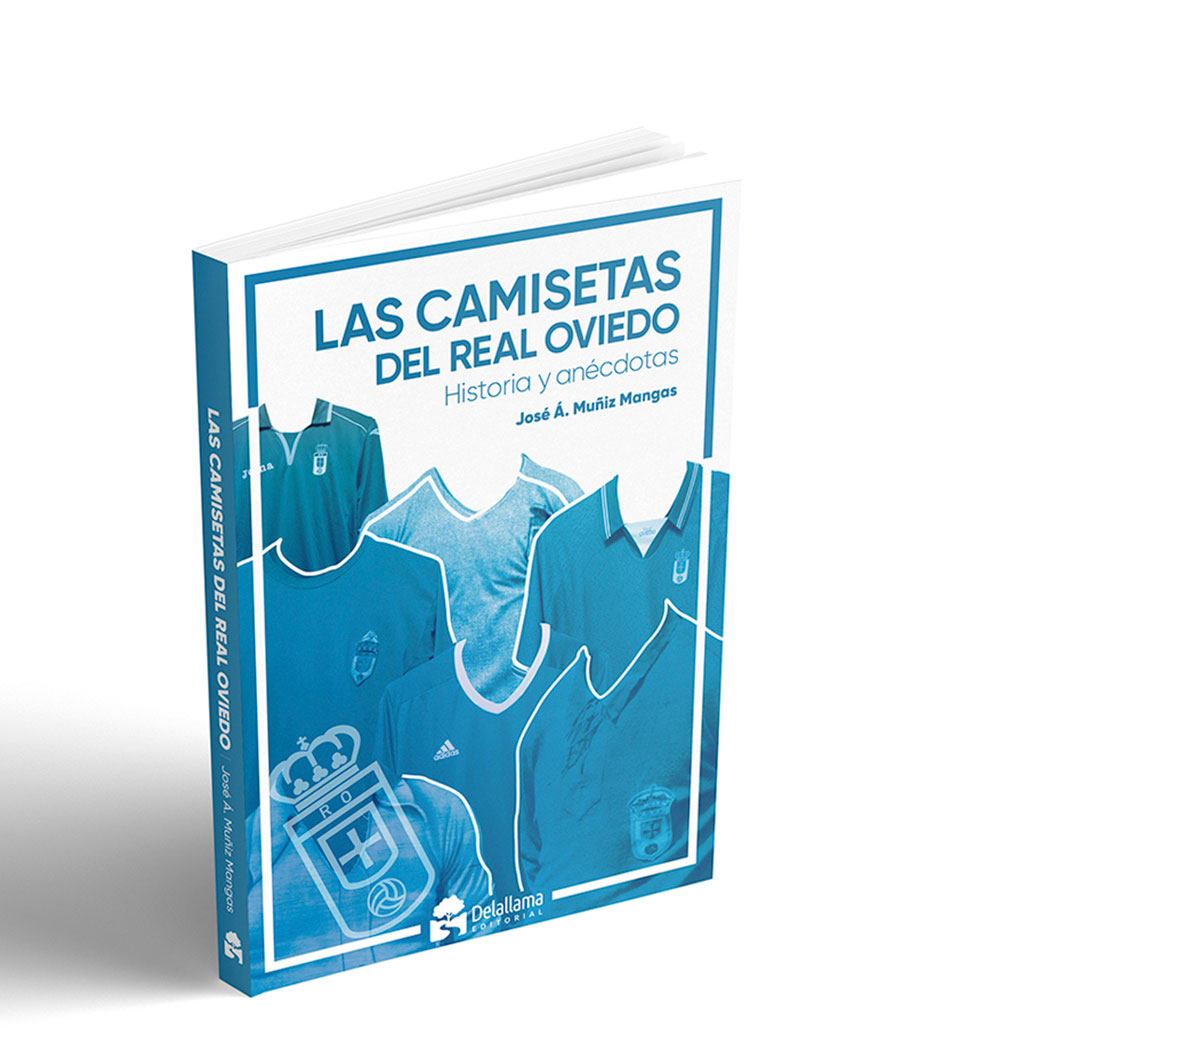 libro de Camisetas del Real Oviedo